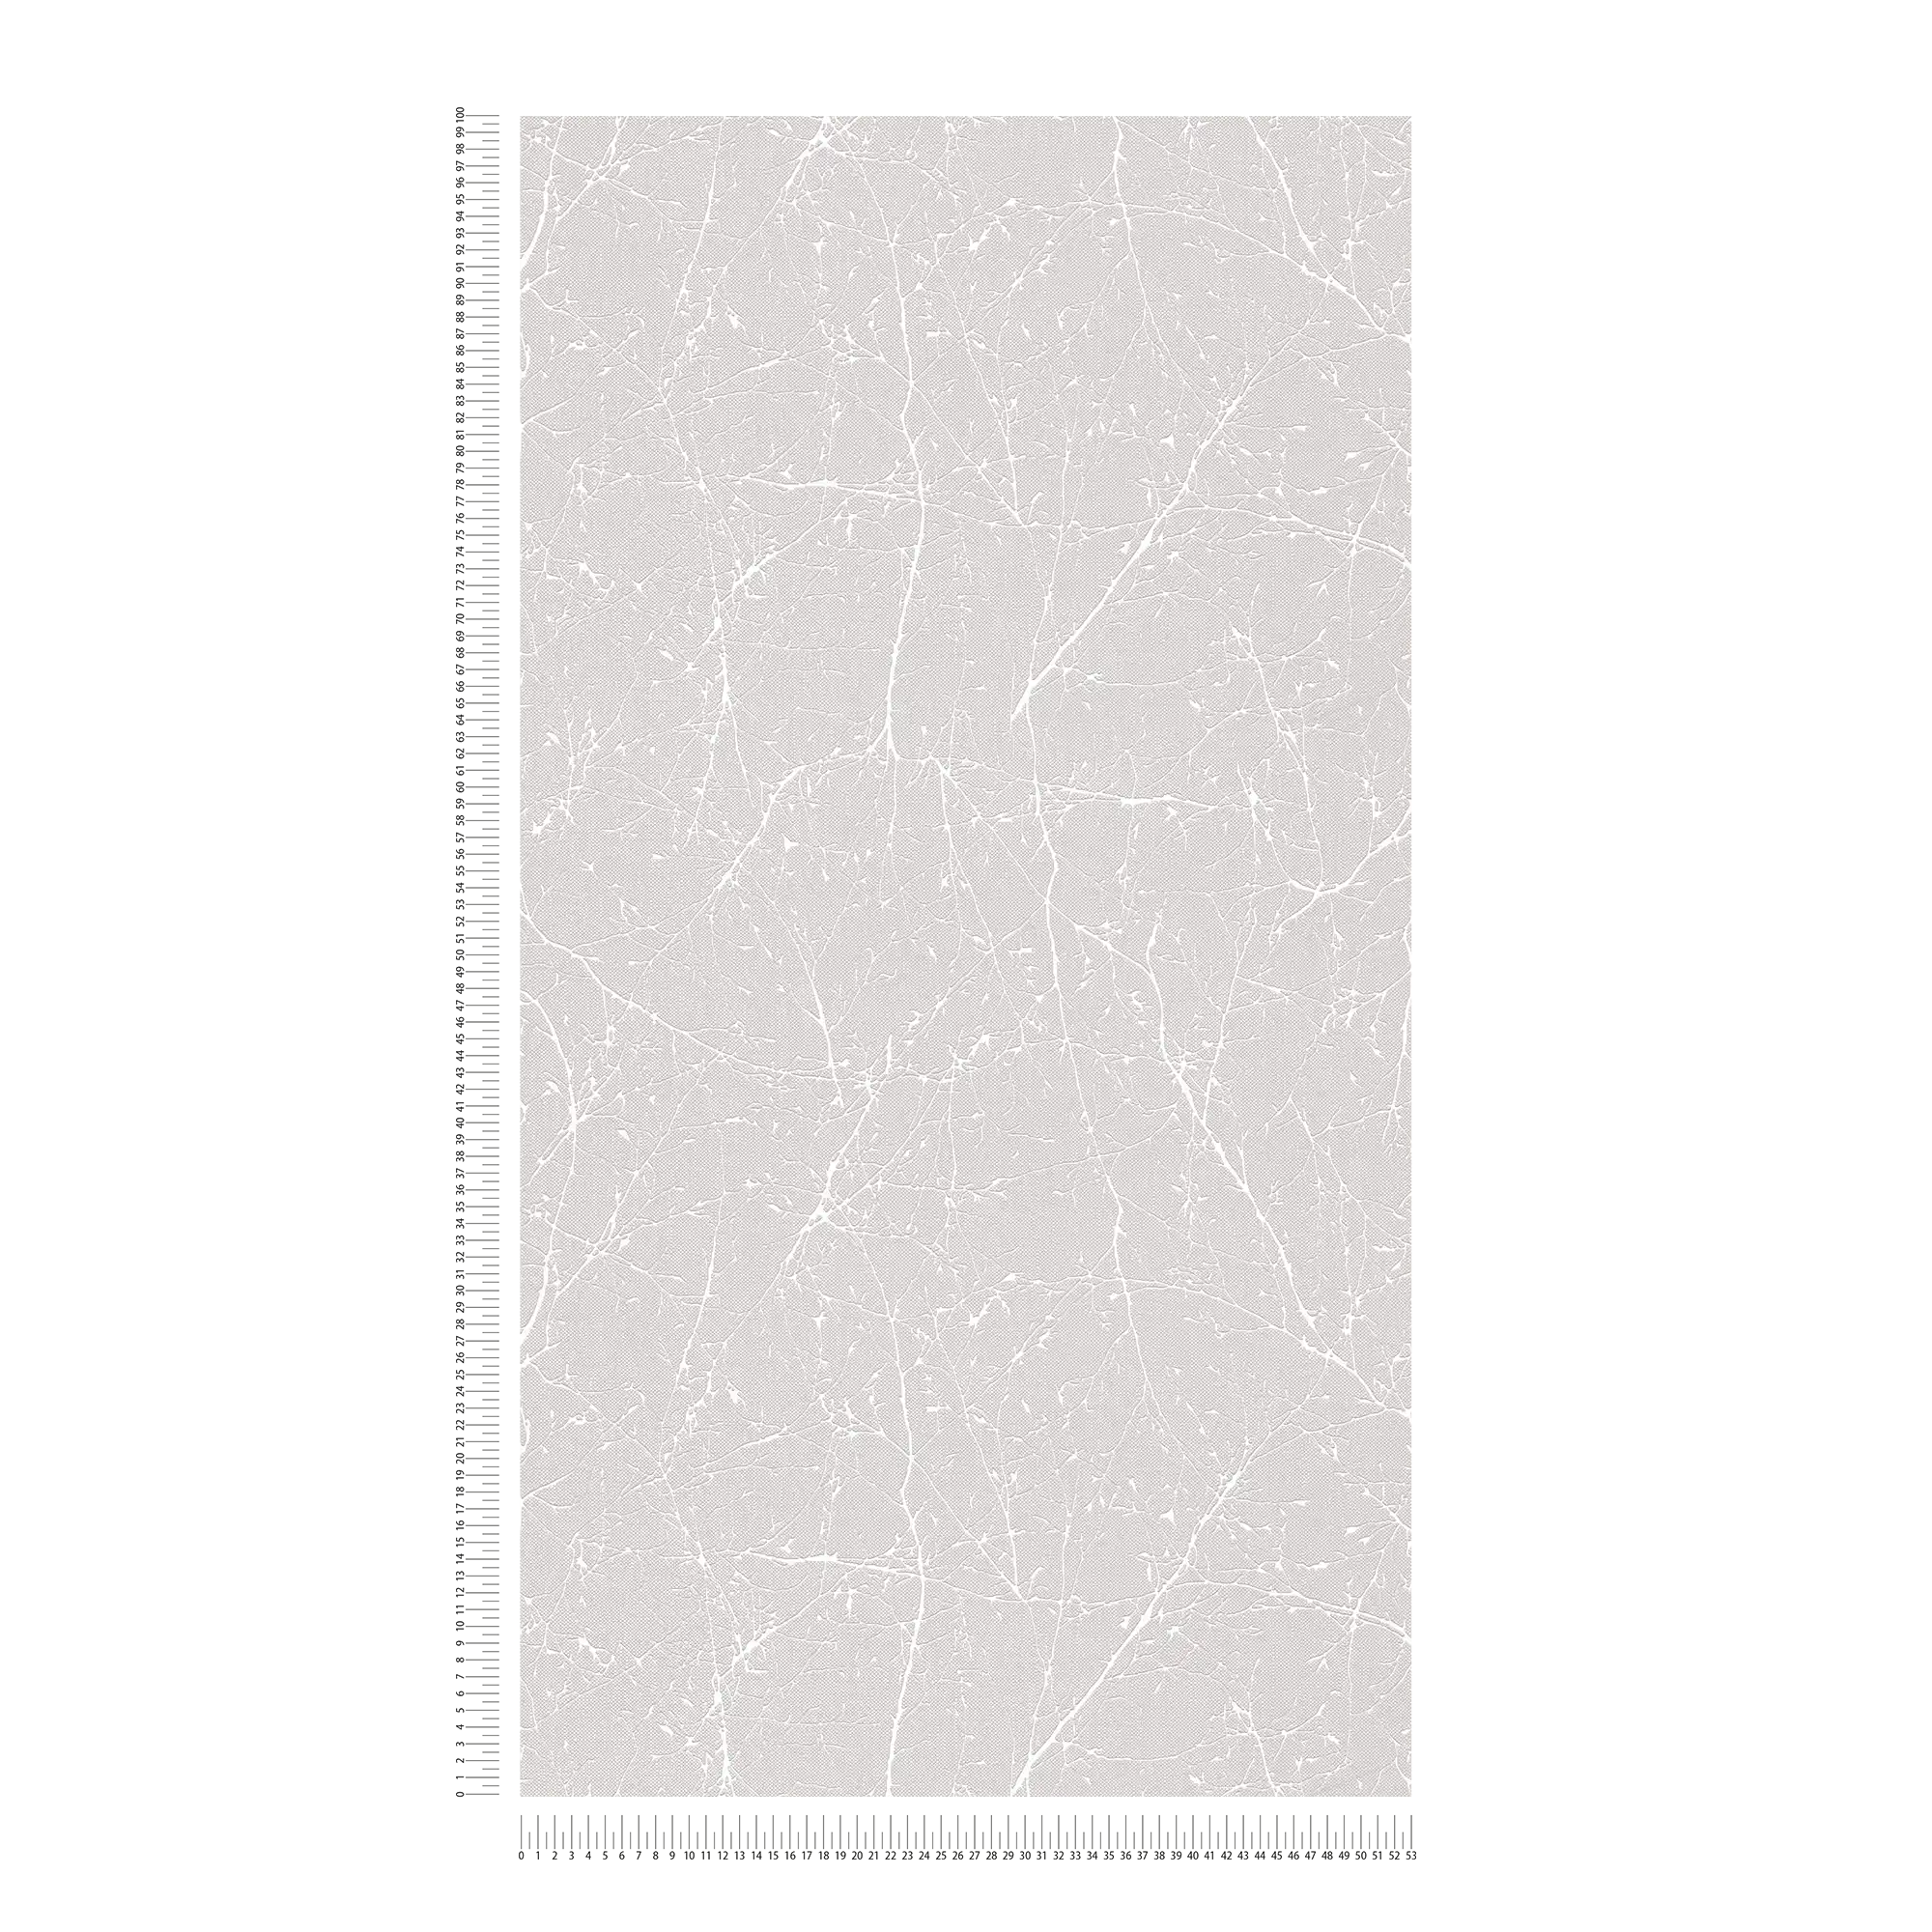             Carta da parati in tessuto non tessuto con fiori e ramoscelli in stile lino - grigio, bianco
        